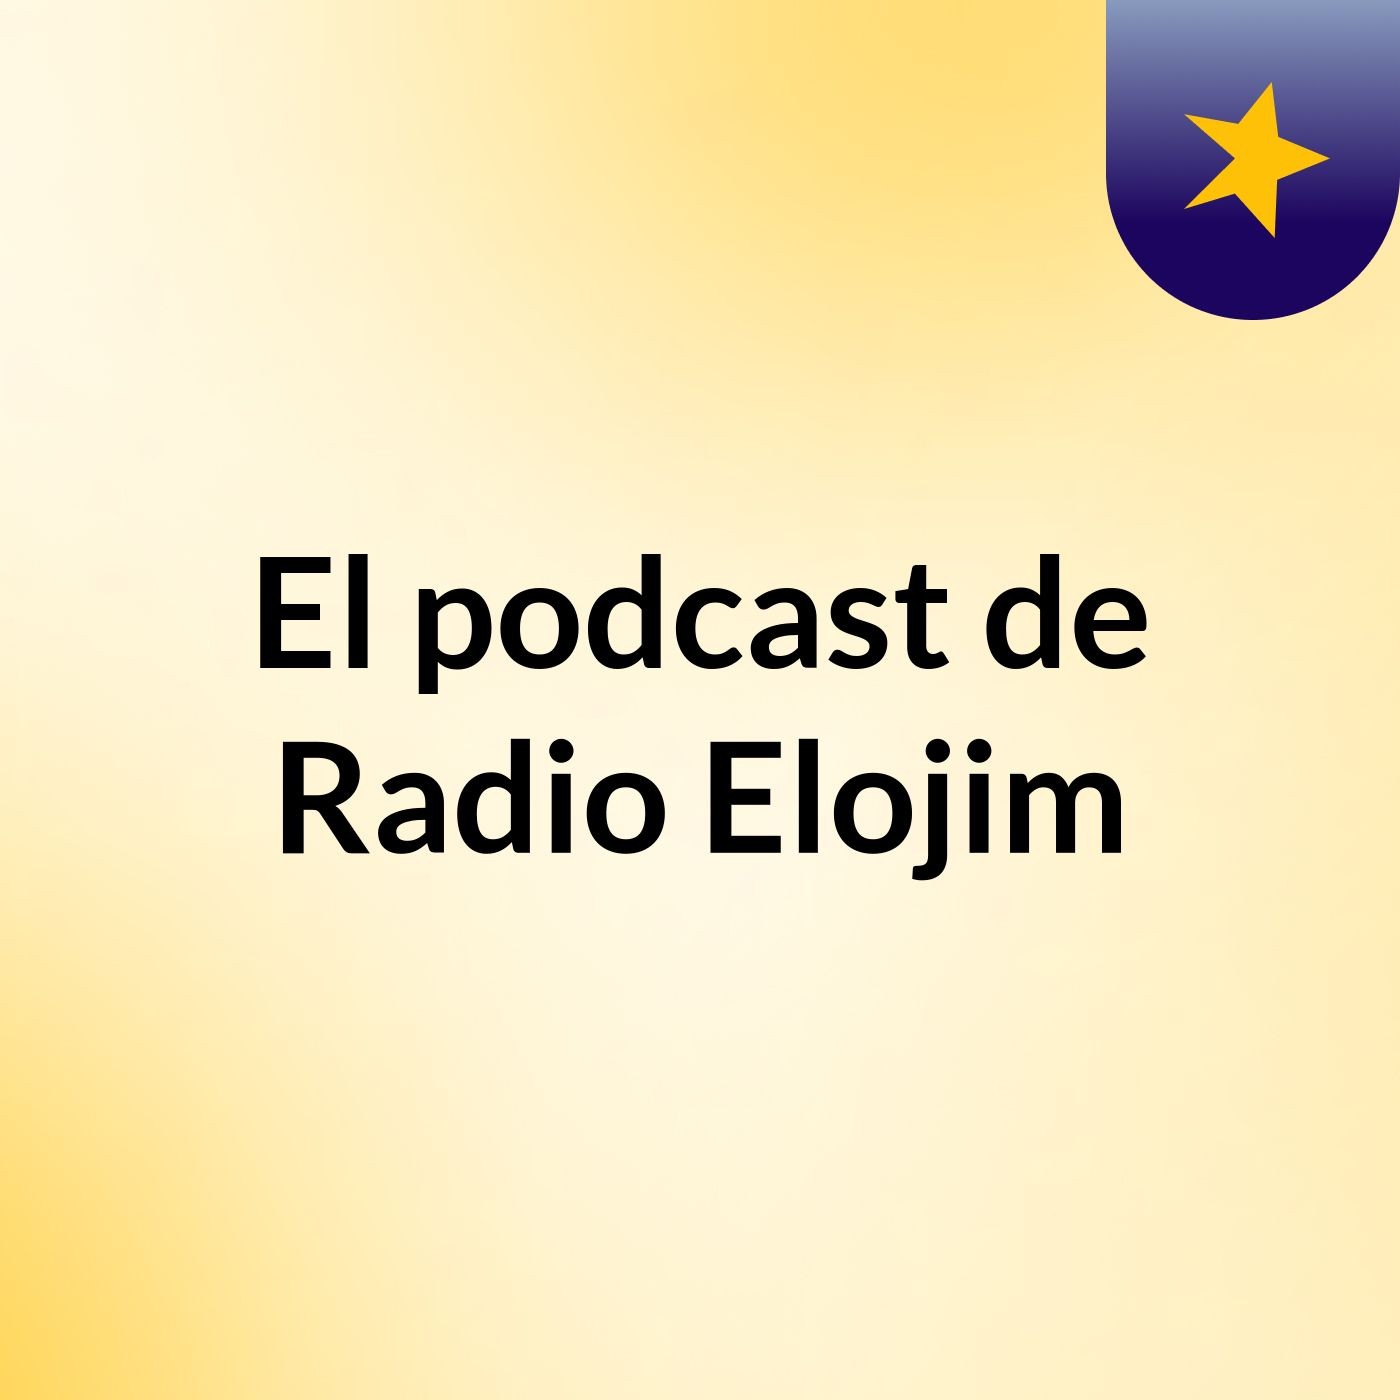 El podcast de Radio Elojim